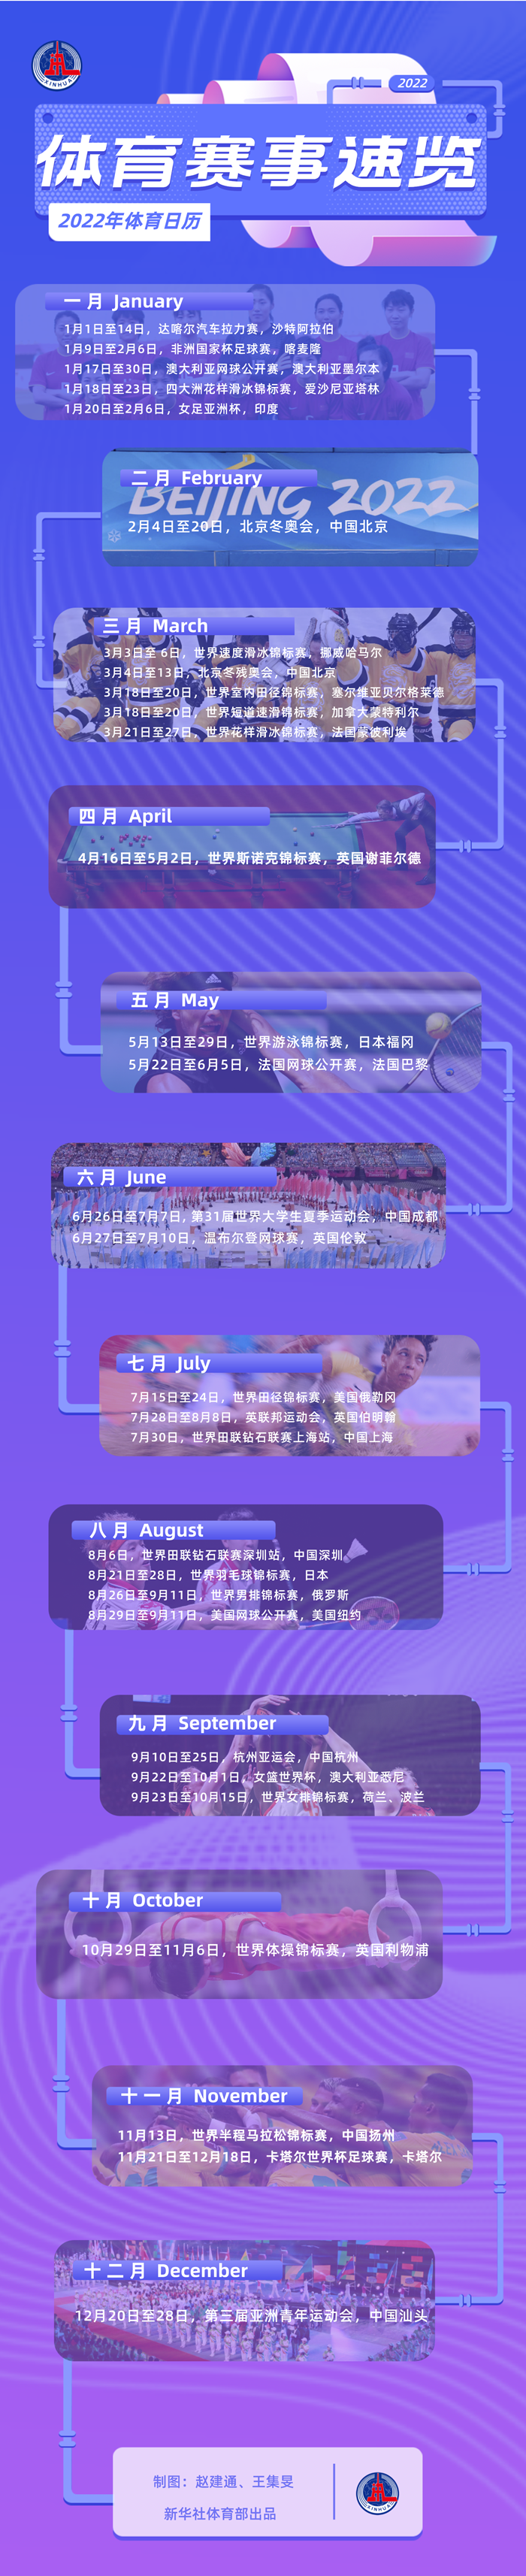 北京欢迎你,一起向未来|2022体育赛事展望